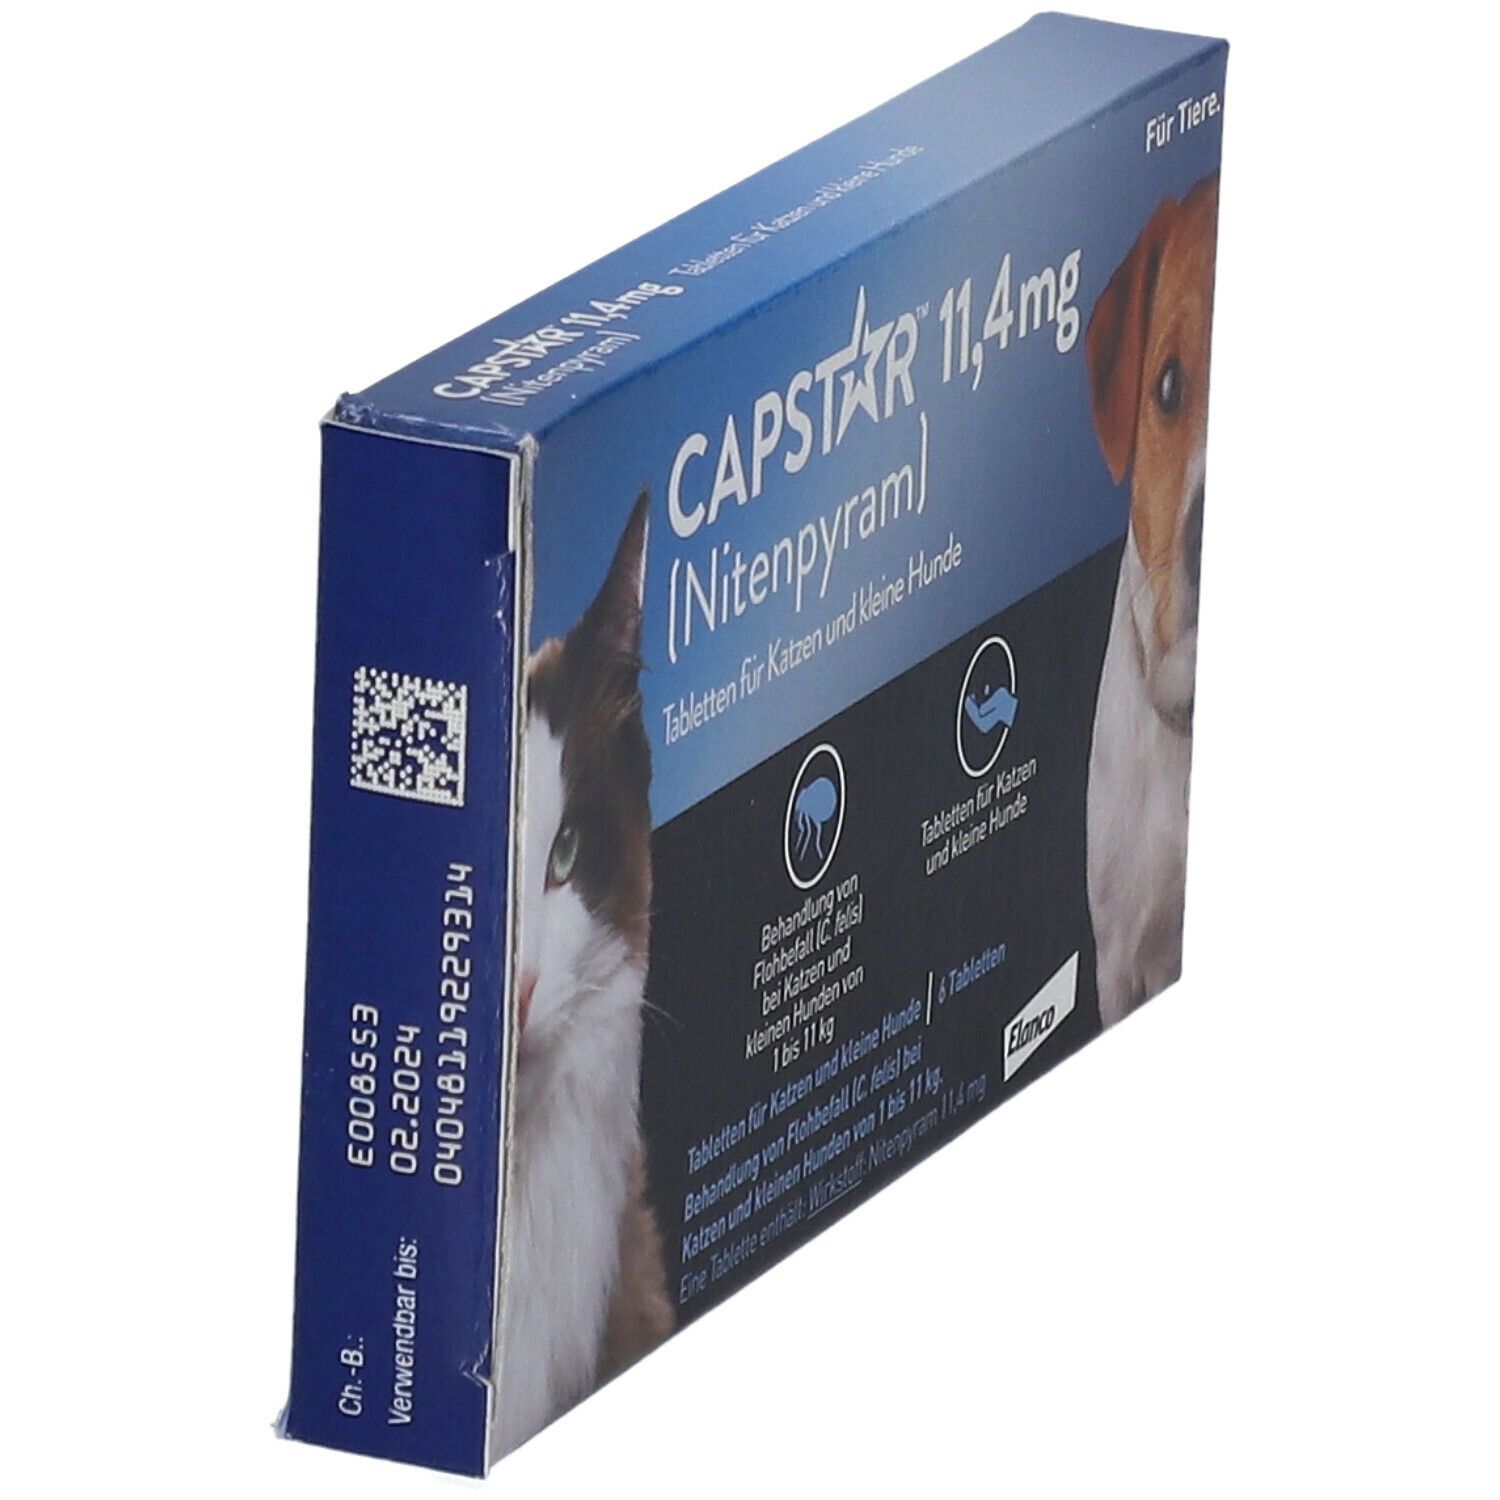 Capstar® 11,4 mg gegen Flohbefall bei Katzen und kleinen Hunden